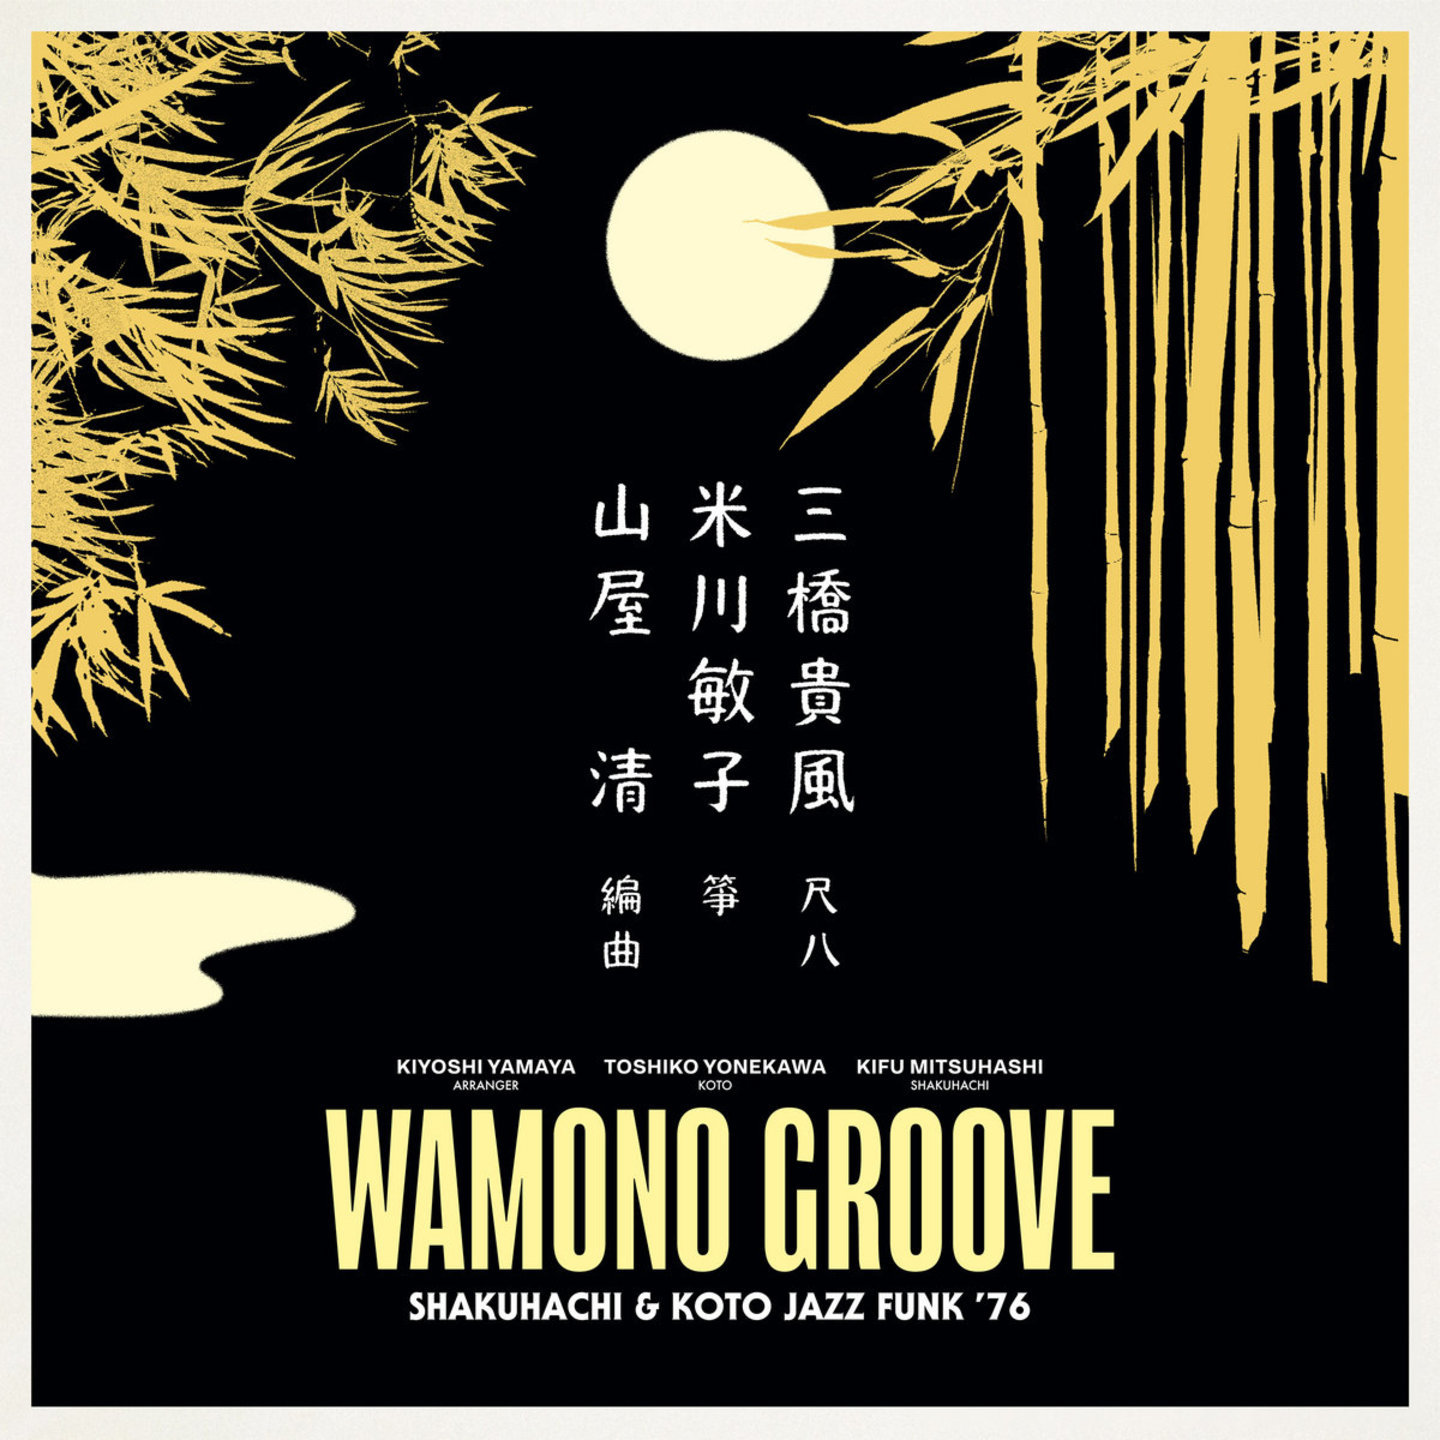 KIYOSHI YAMAYA  TOSHIKO YONEKAWA  KIFU MITSUHASHI - Wamono Groove Shakuhachi & Koto Jazz Funk 76 LP 180gram vinyl